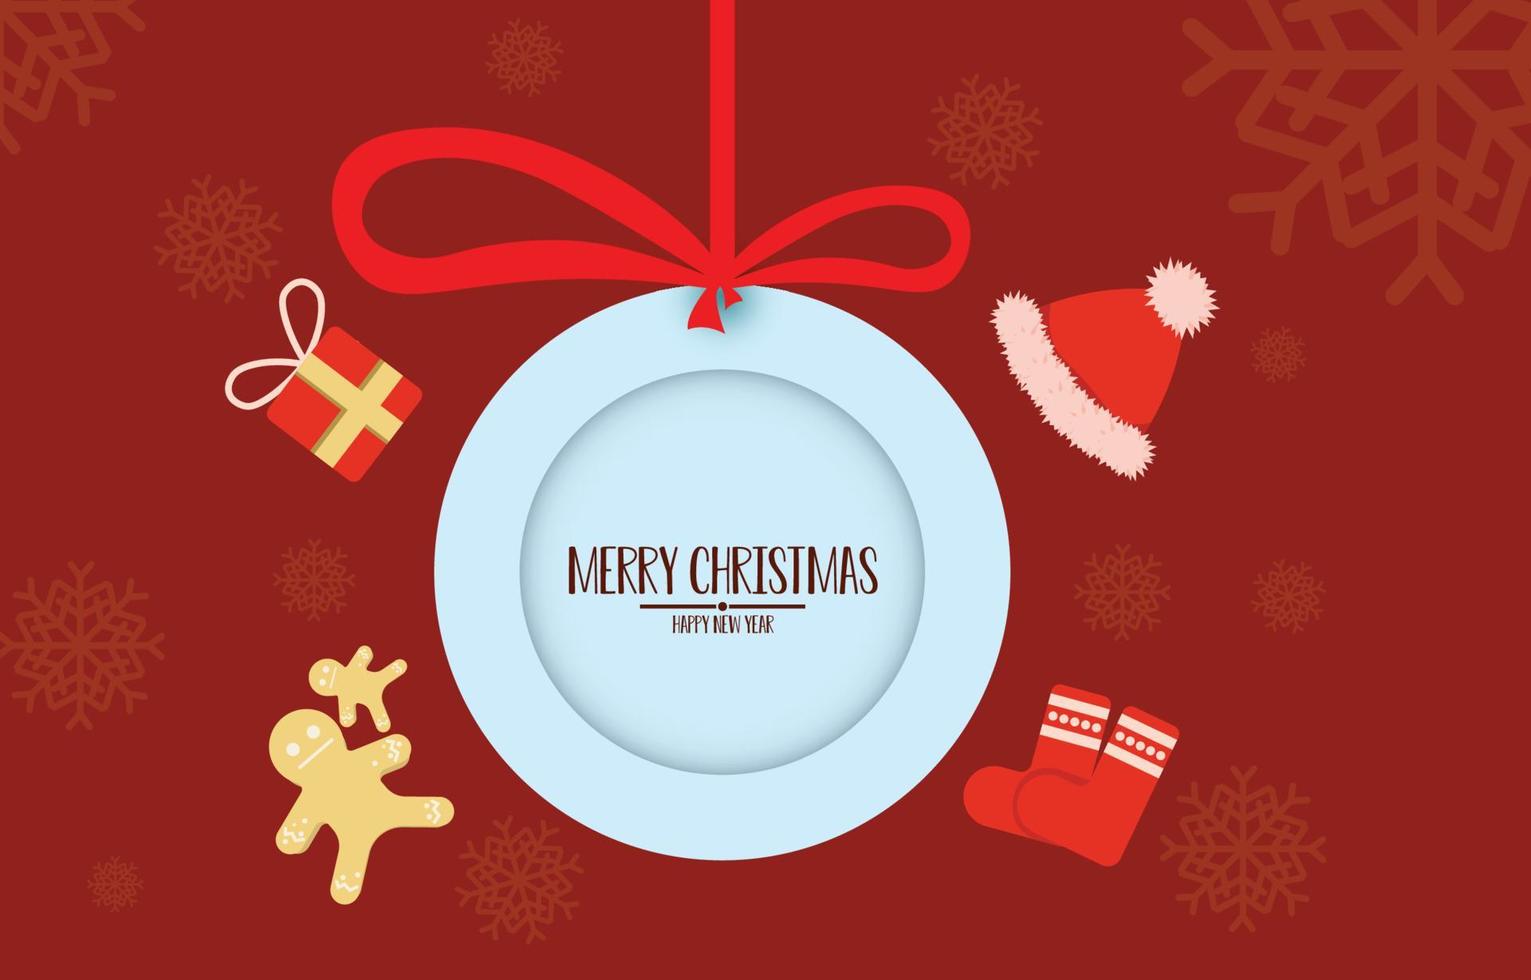 etiqueta colgante circular con mensaje feliz navidad y feliz año nuevo. fondo con regalo decorado, ilustración vectorial de invierno vector